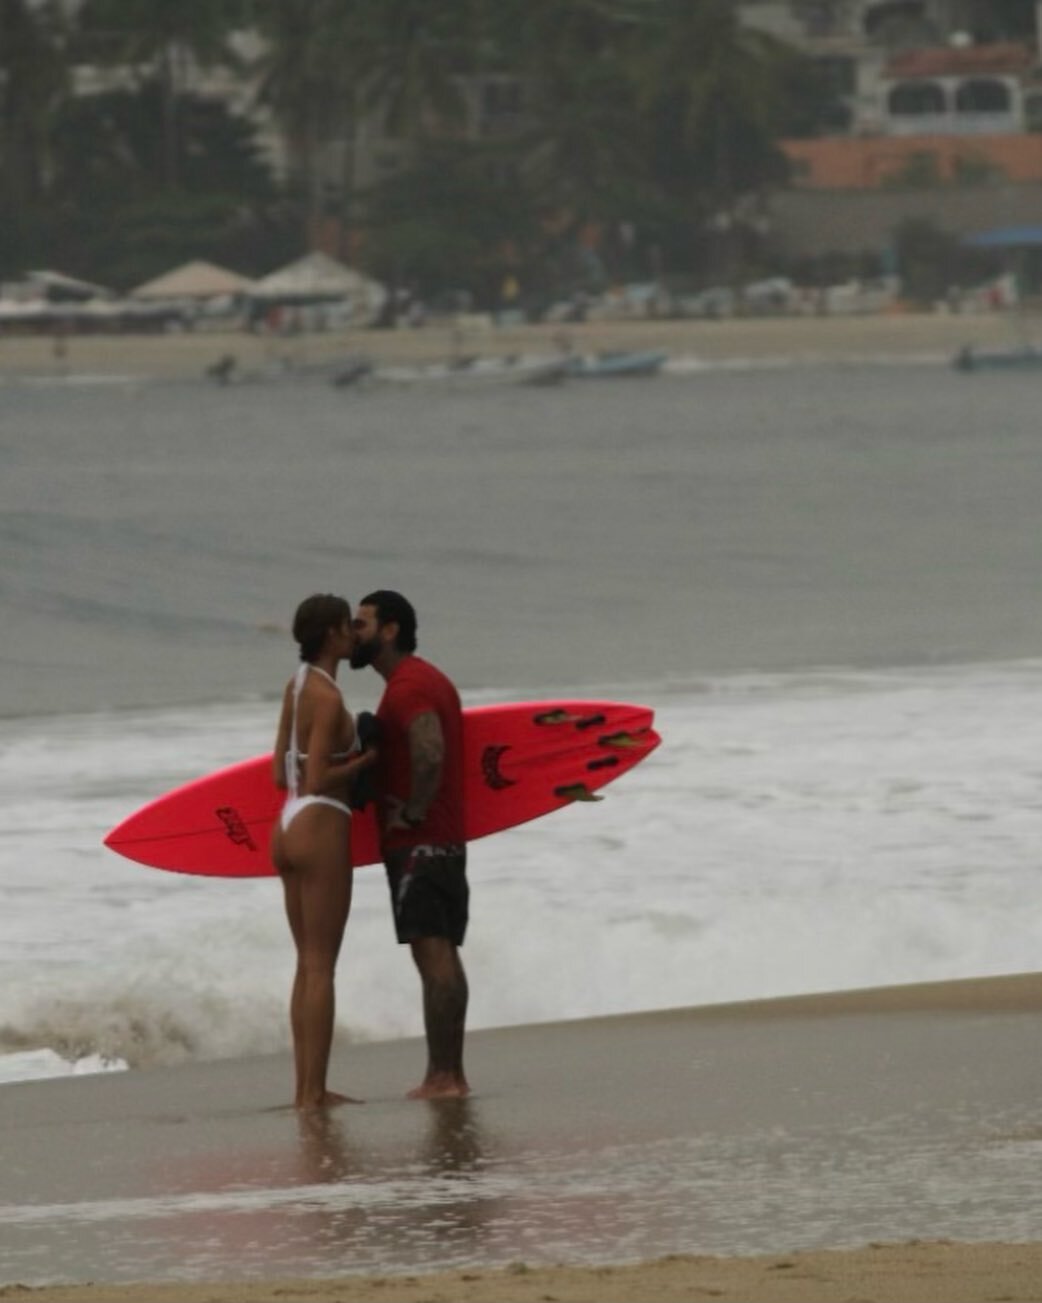 Валя Иванова и Тимати целовались на пляже, но снимок никак не тянет на случайный